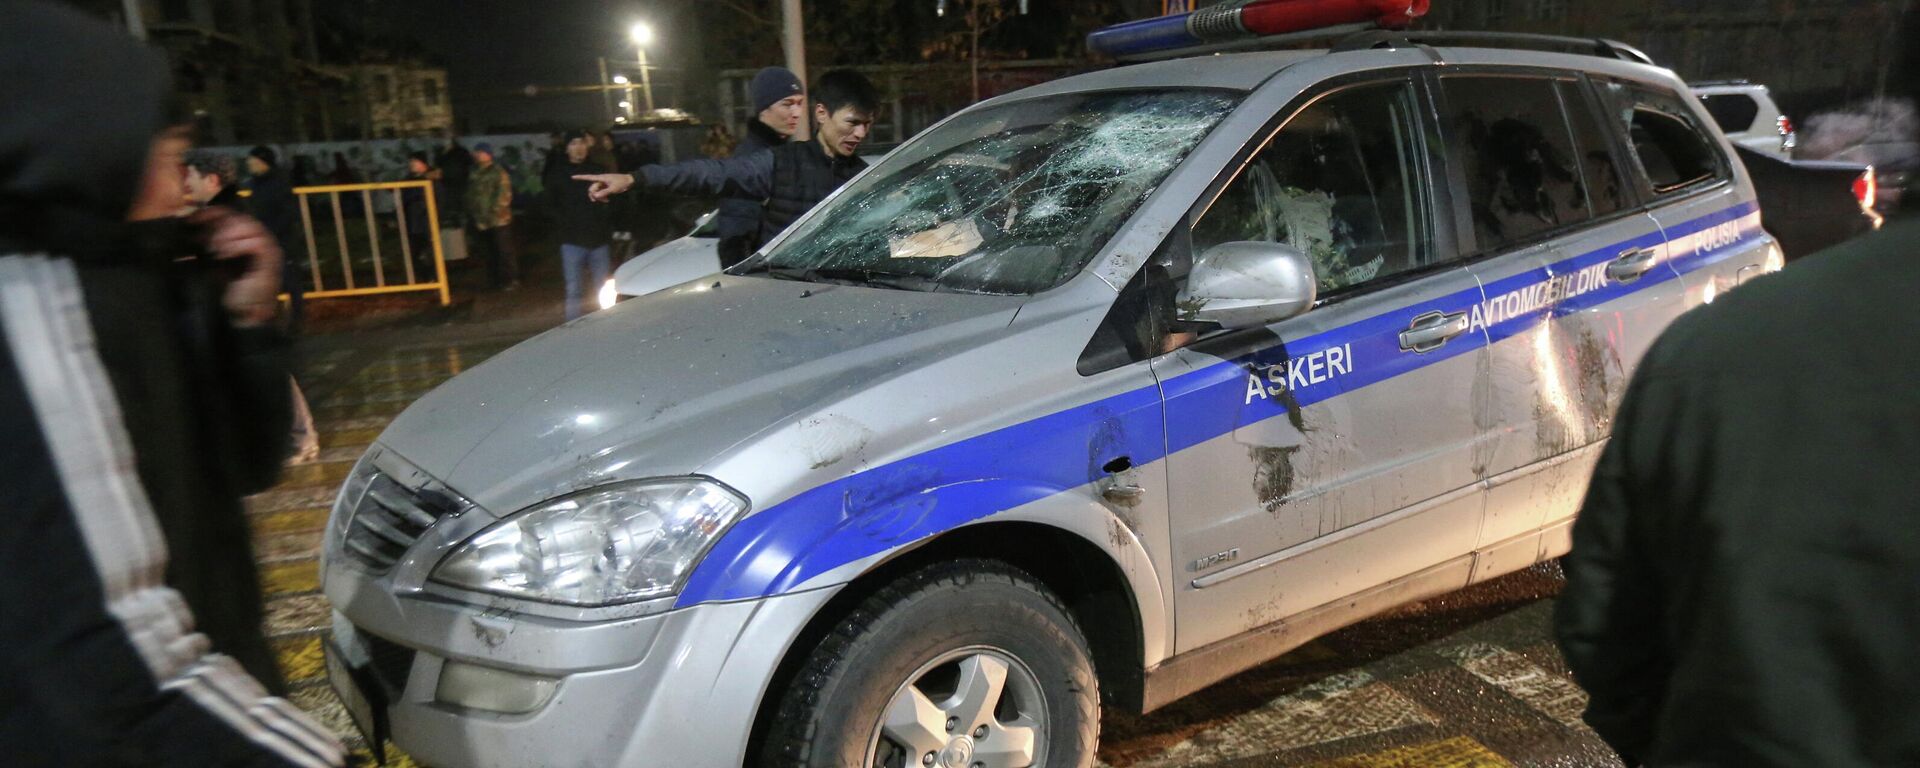 Los manifestantes rodean un coche de Policía dañado durante una protesta contra el aumento del costo del gas licuado, en Almaty, Kazajistán, el 4 de enero de 2022 - Sputnik Mundo, 1920, 10.01.2022